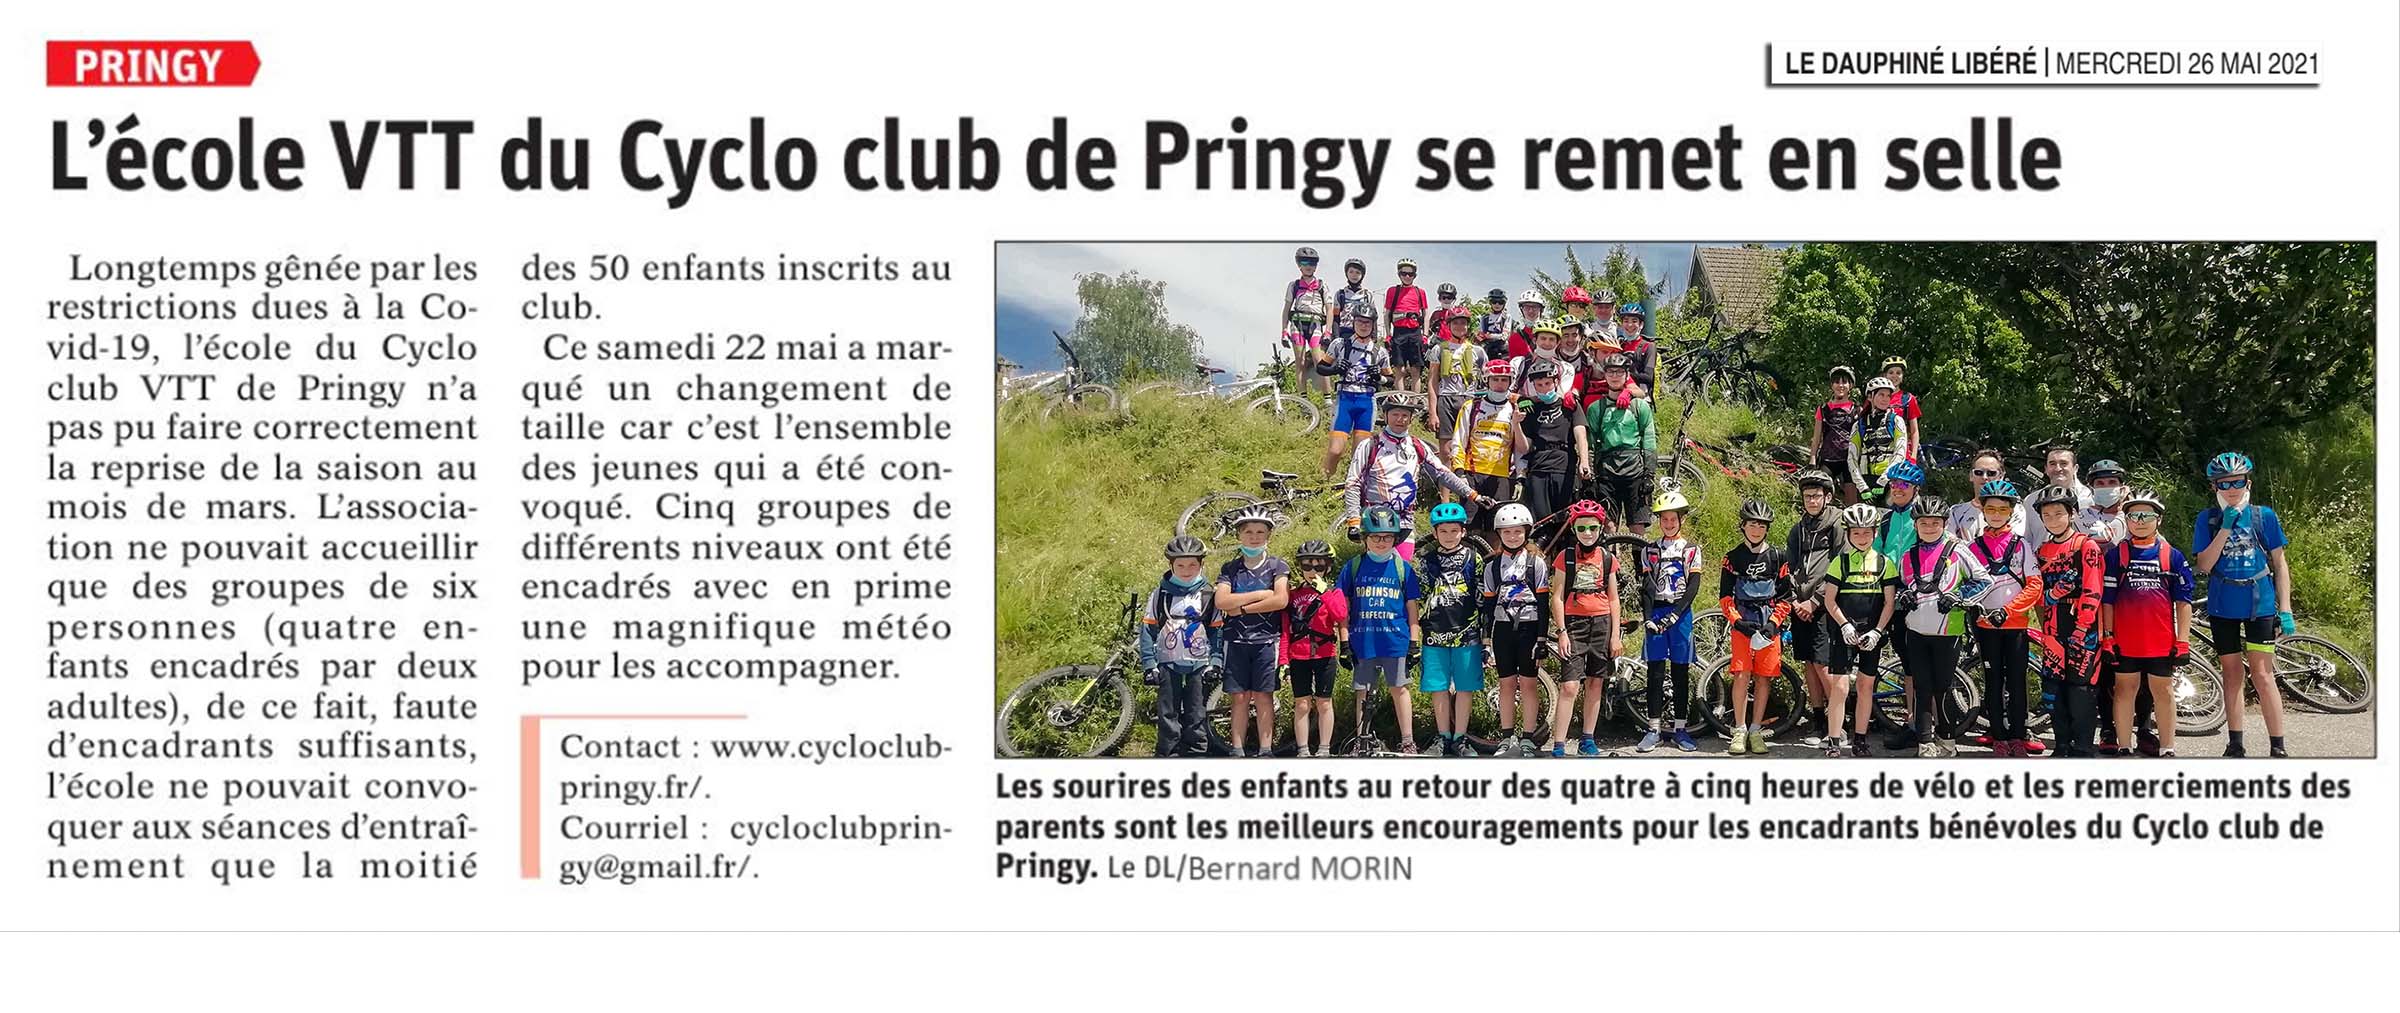 20210526-L'école VTT du Cyclo club de Pringy se remet en selle.jpg